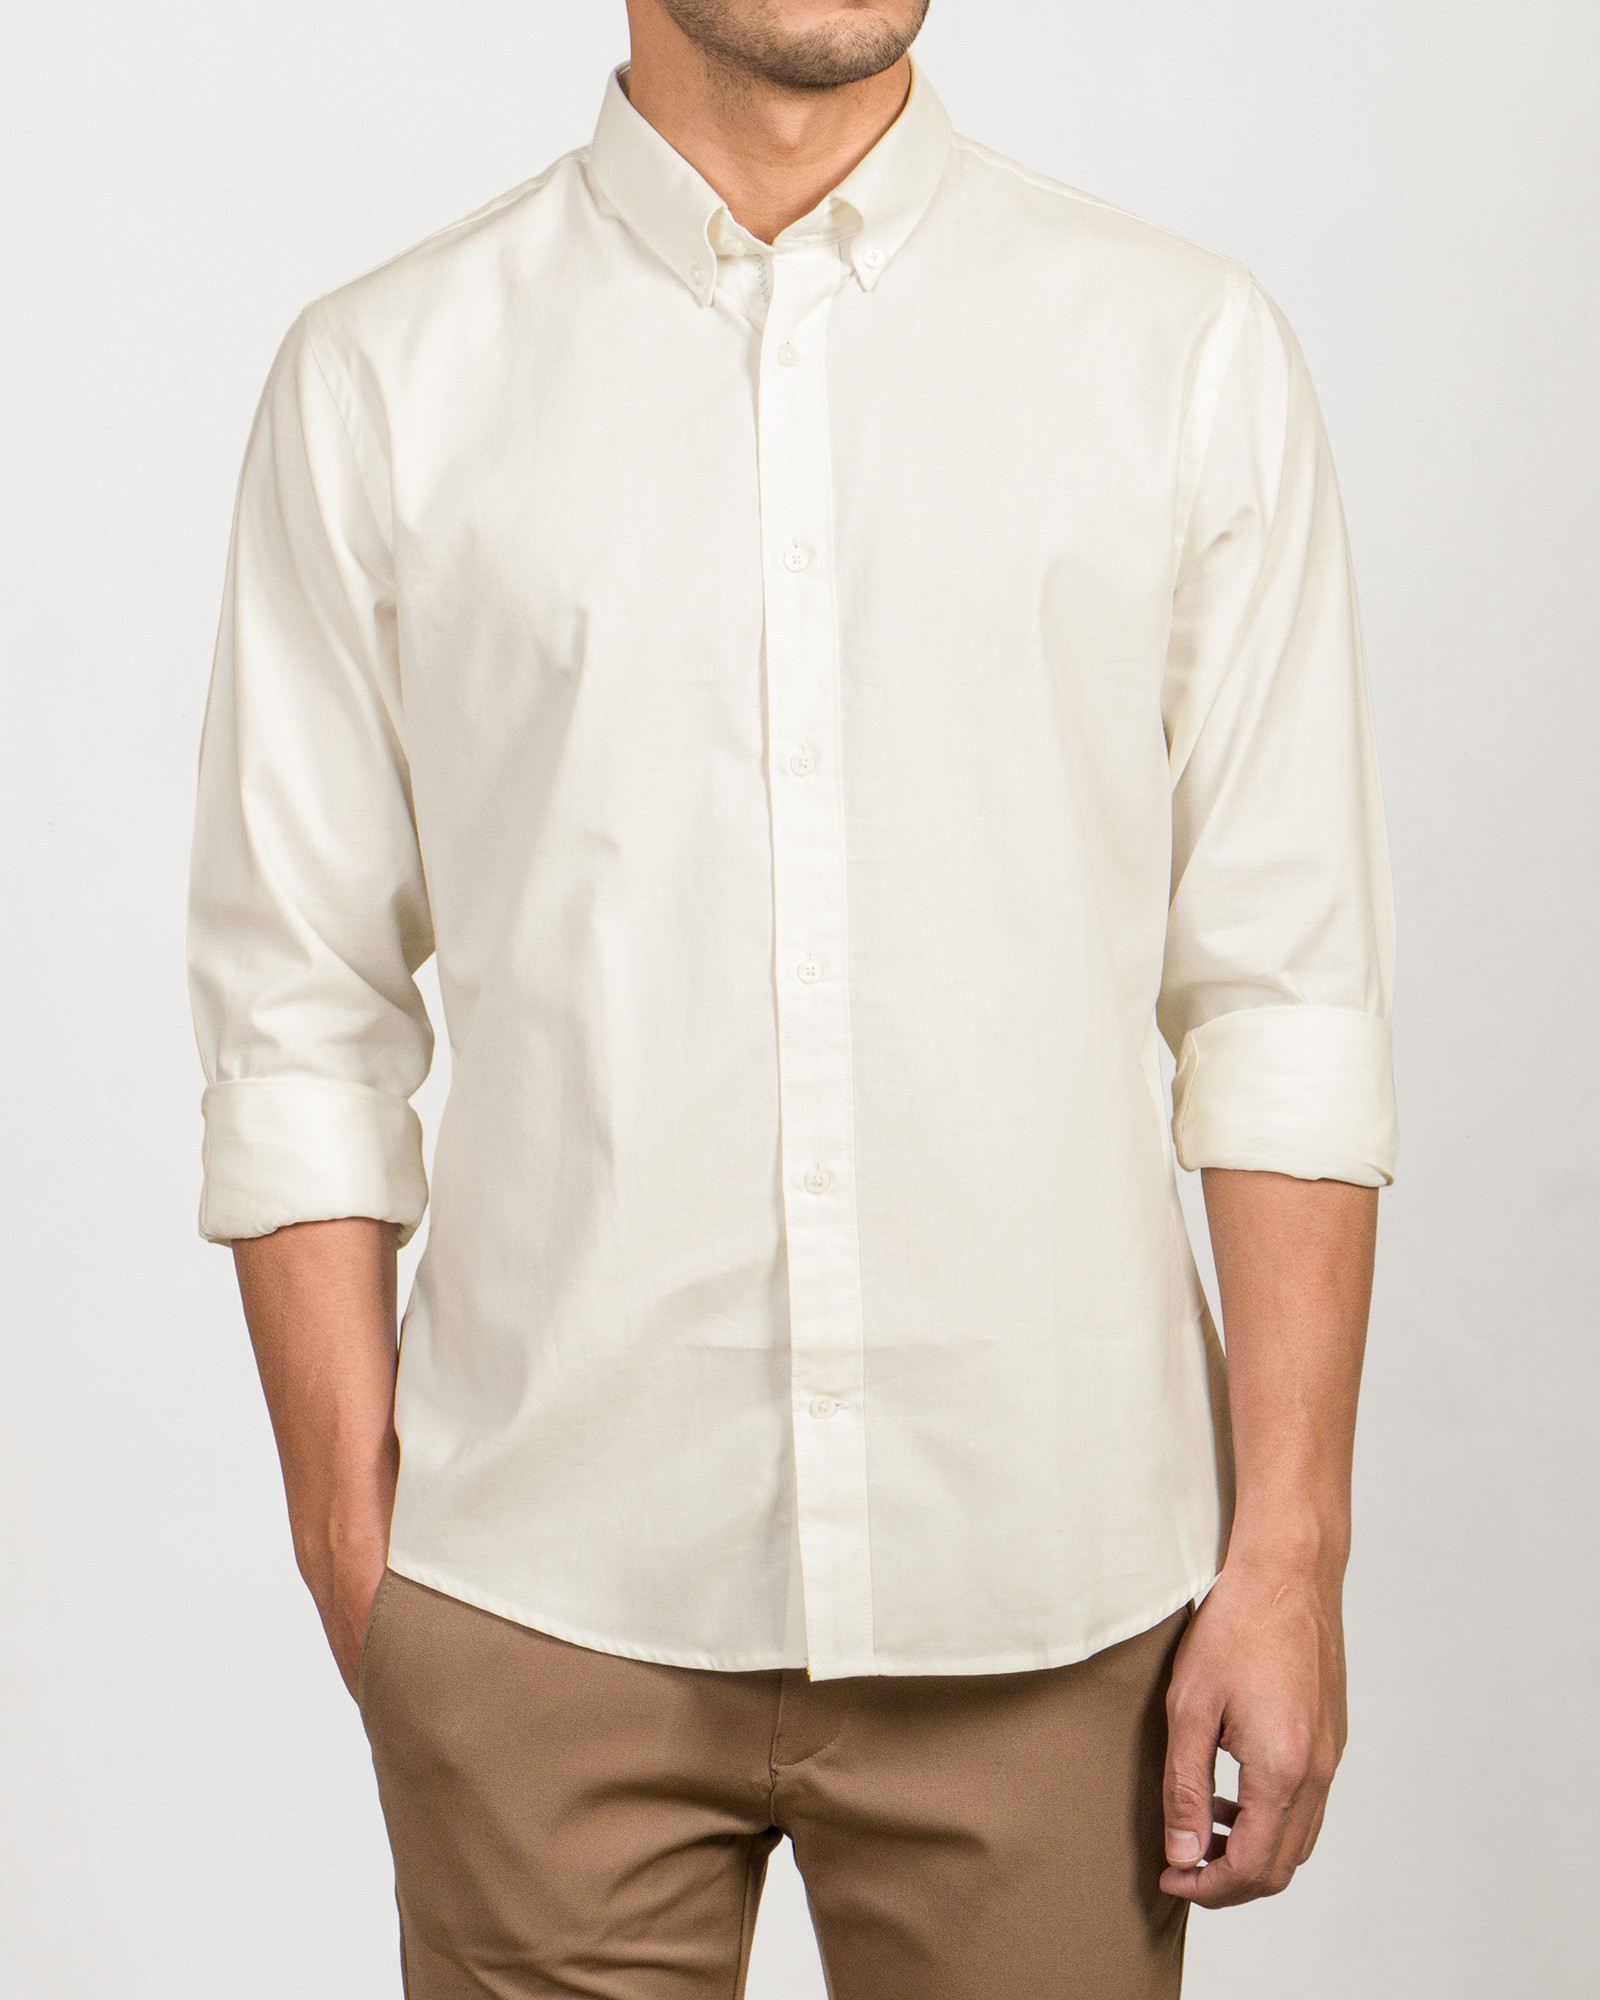 خرید پیراهن آستین بلند مردانه ساده شیری 19421182